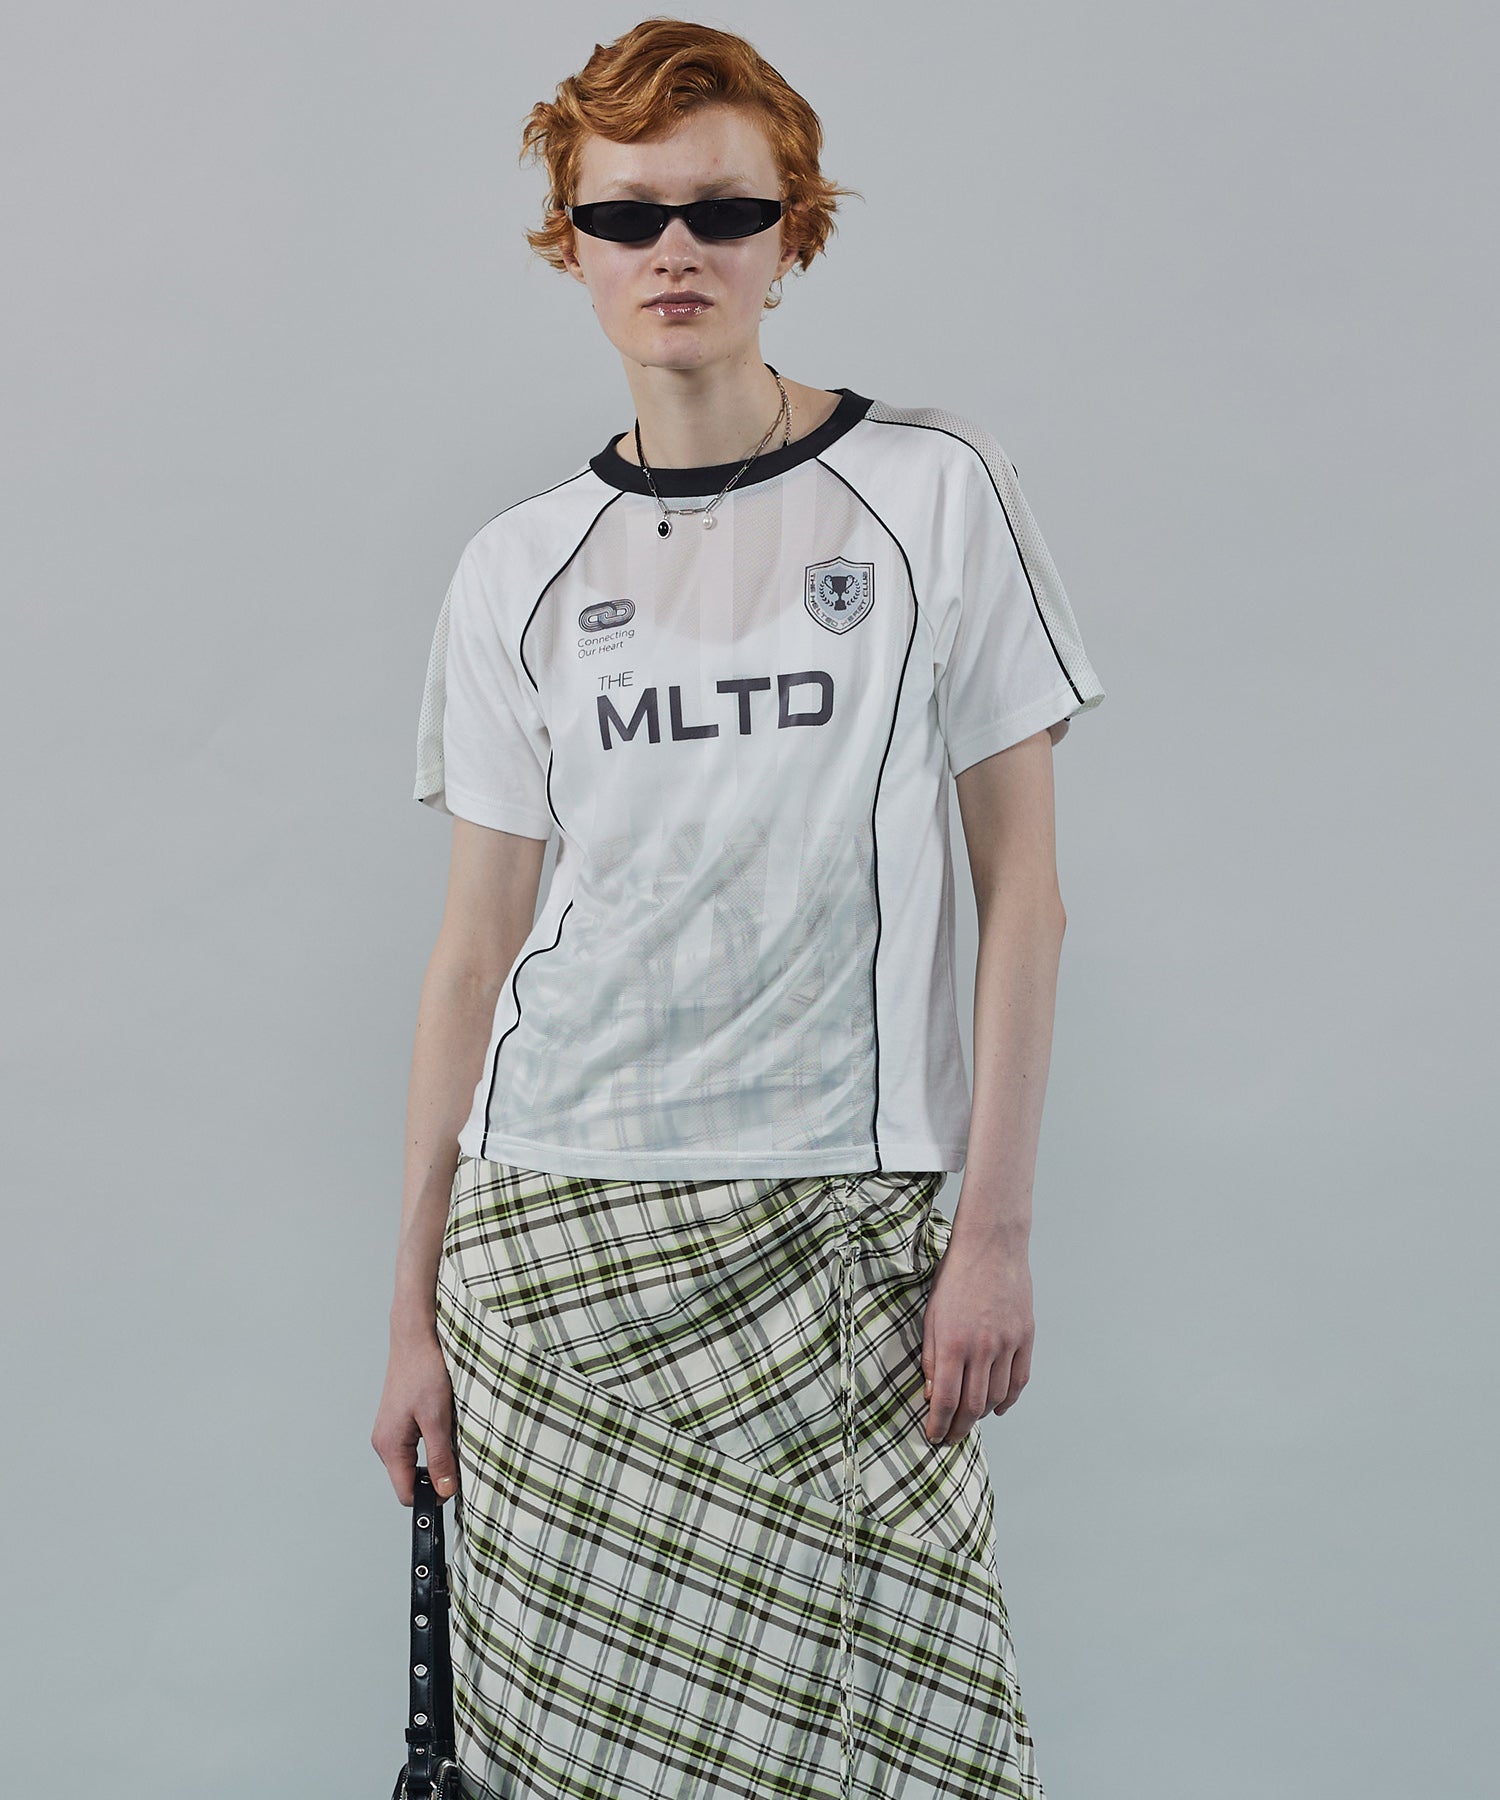 MLTD Uniform T-shirt